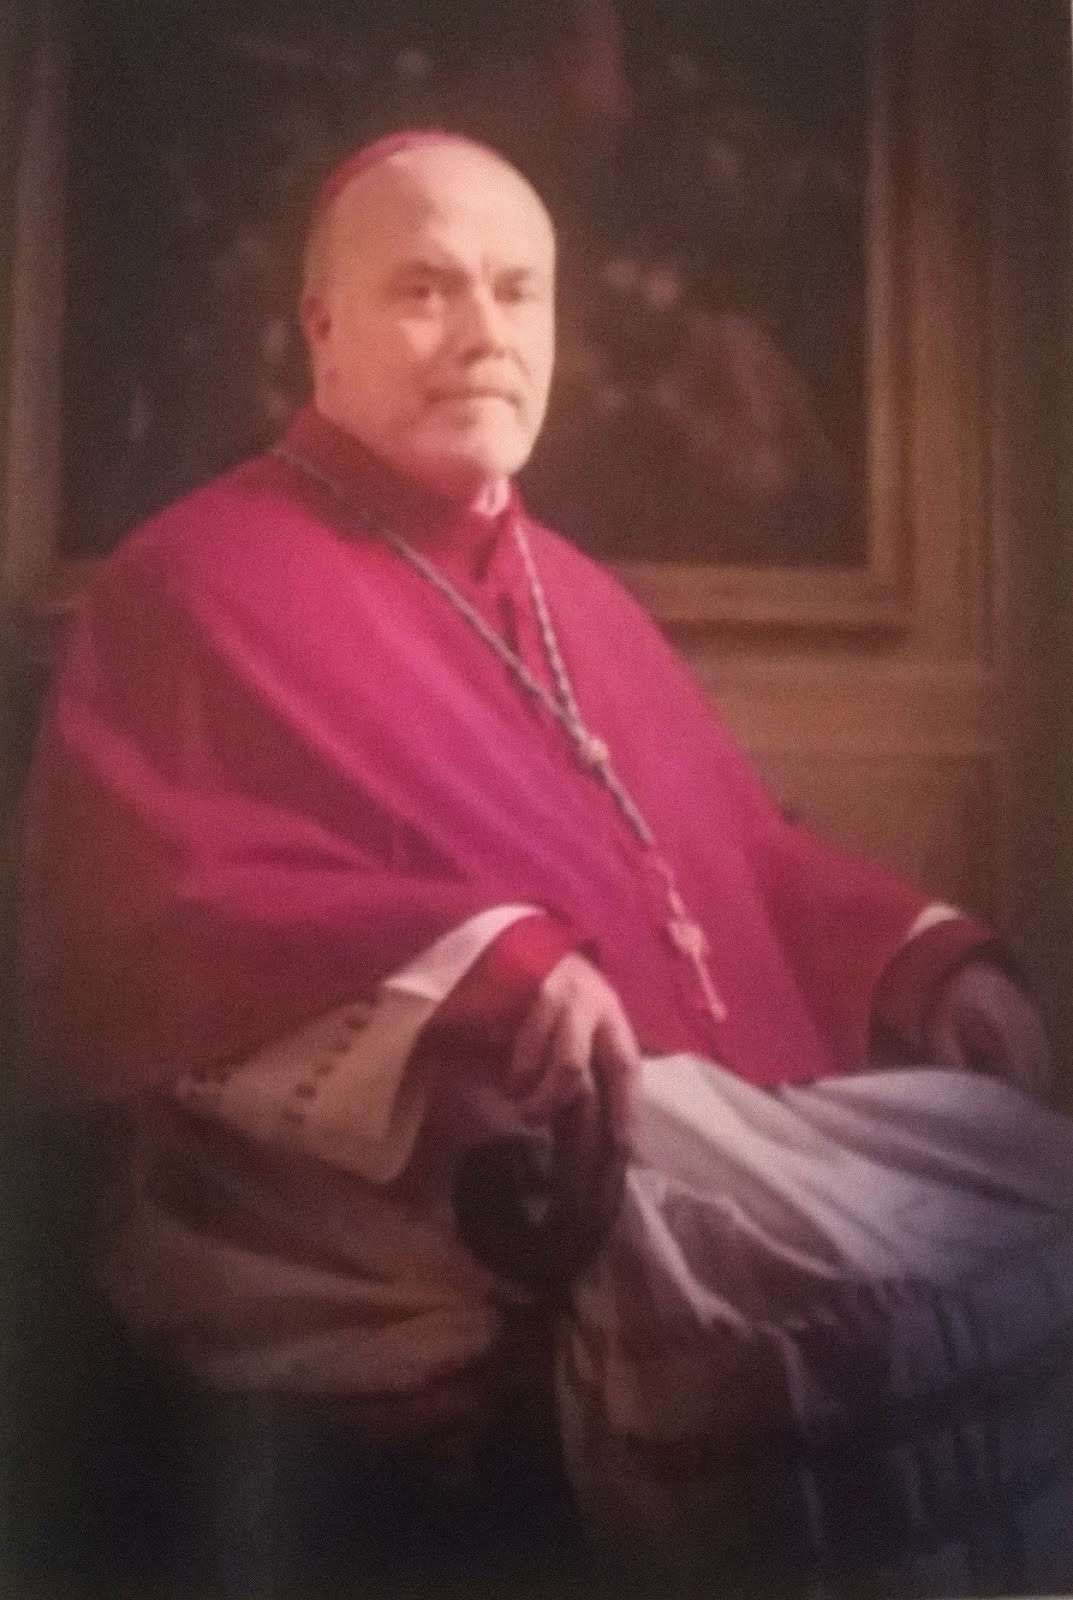 The Bishop of Leeds